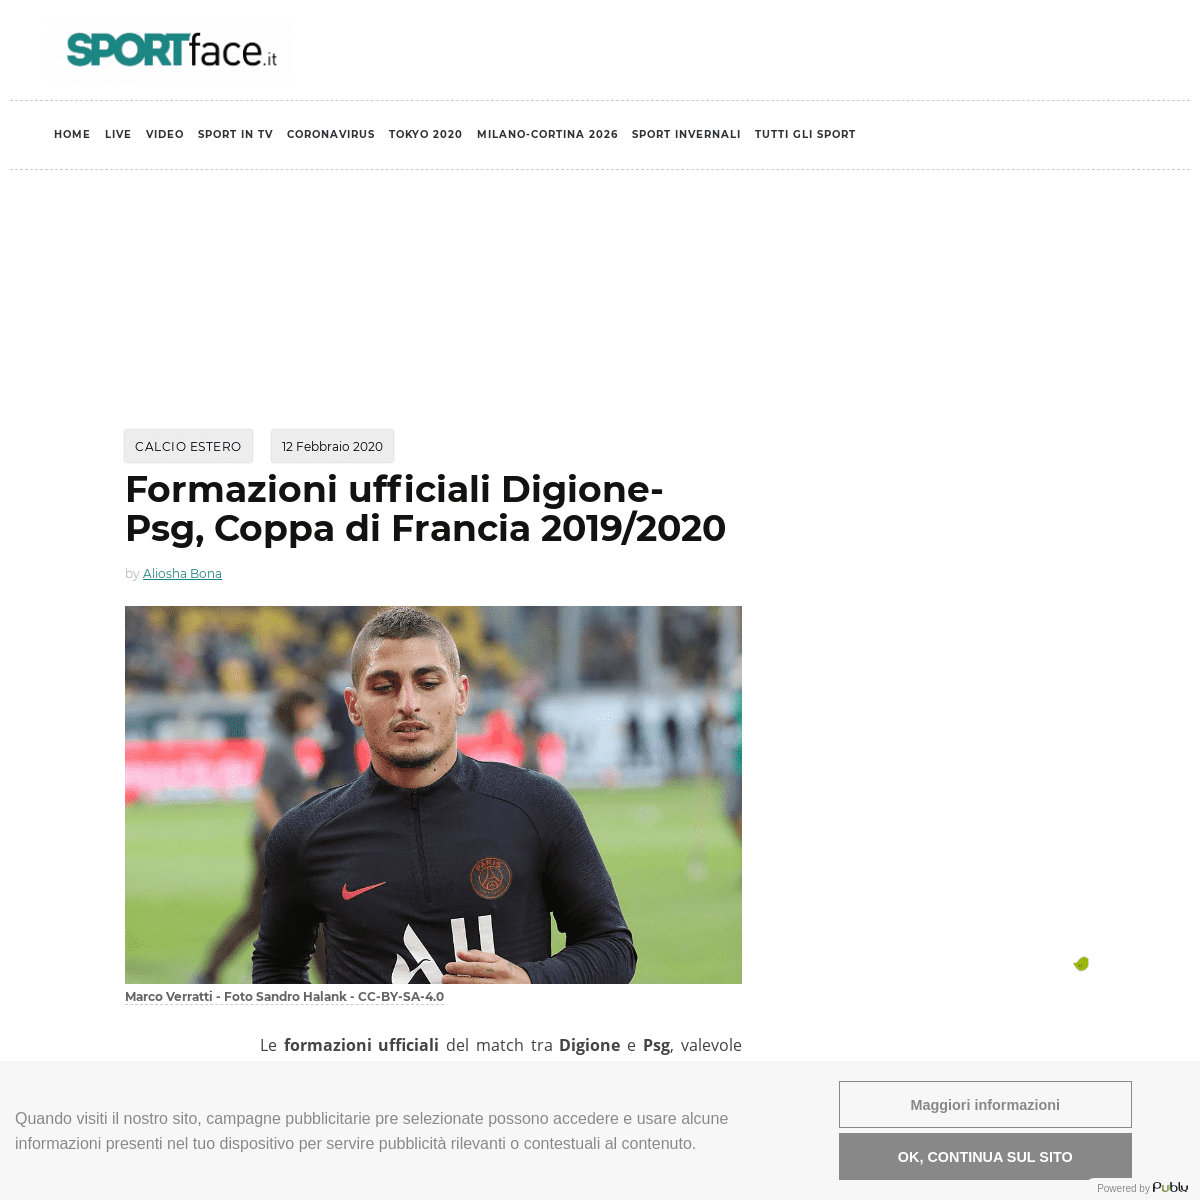 A complete backup of www.sportface.it/calcio/calcio-estero/formazioni-ufficiali-digione-psg-coppa-di-francia-2019-2020/980815